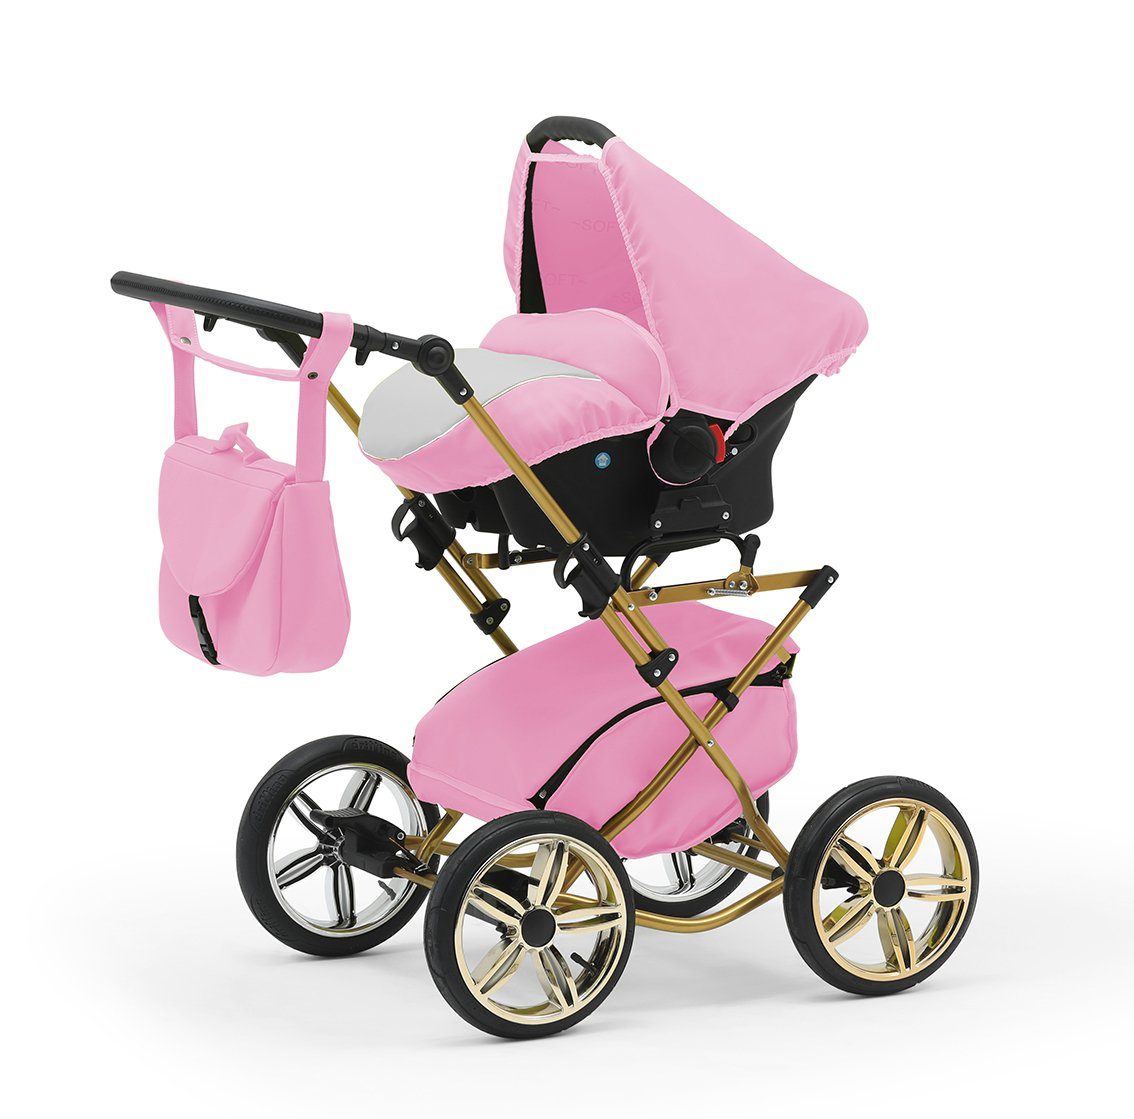 babies-on-wheels Kombi-Kinderwagen Designs in 1 in 14 4 und Base 10 - Iso inkl. Teile - Autositz Rosa-Weiß Sorento